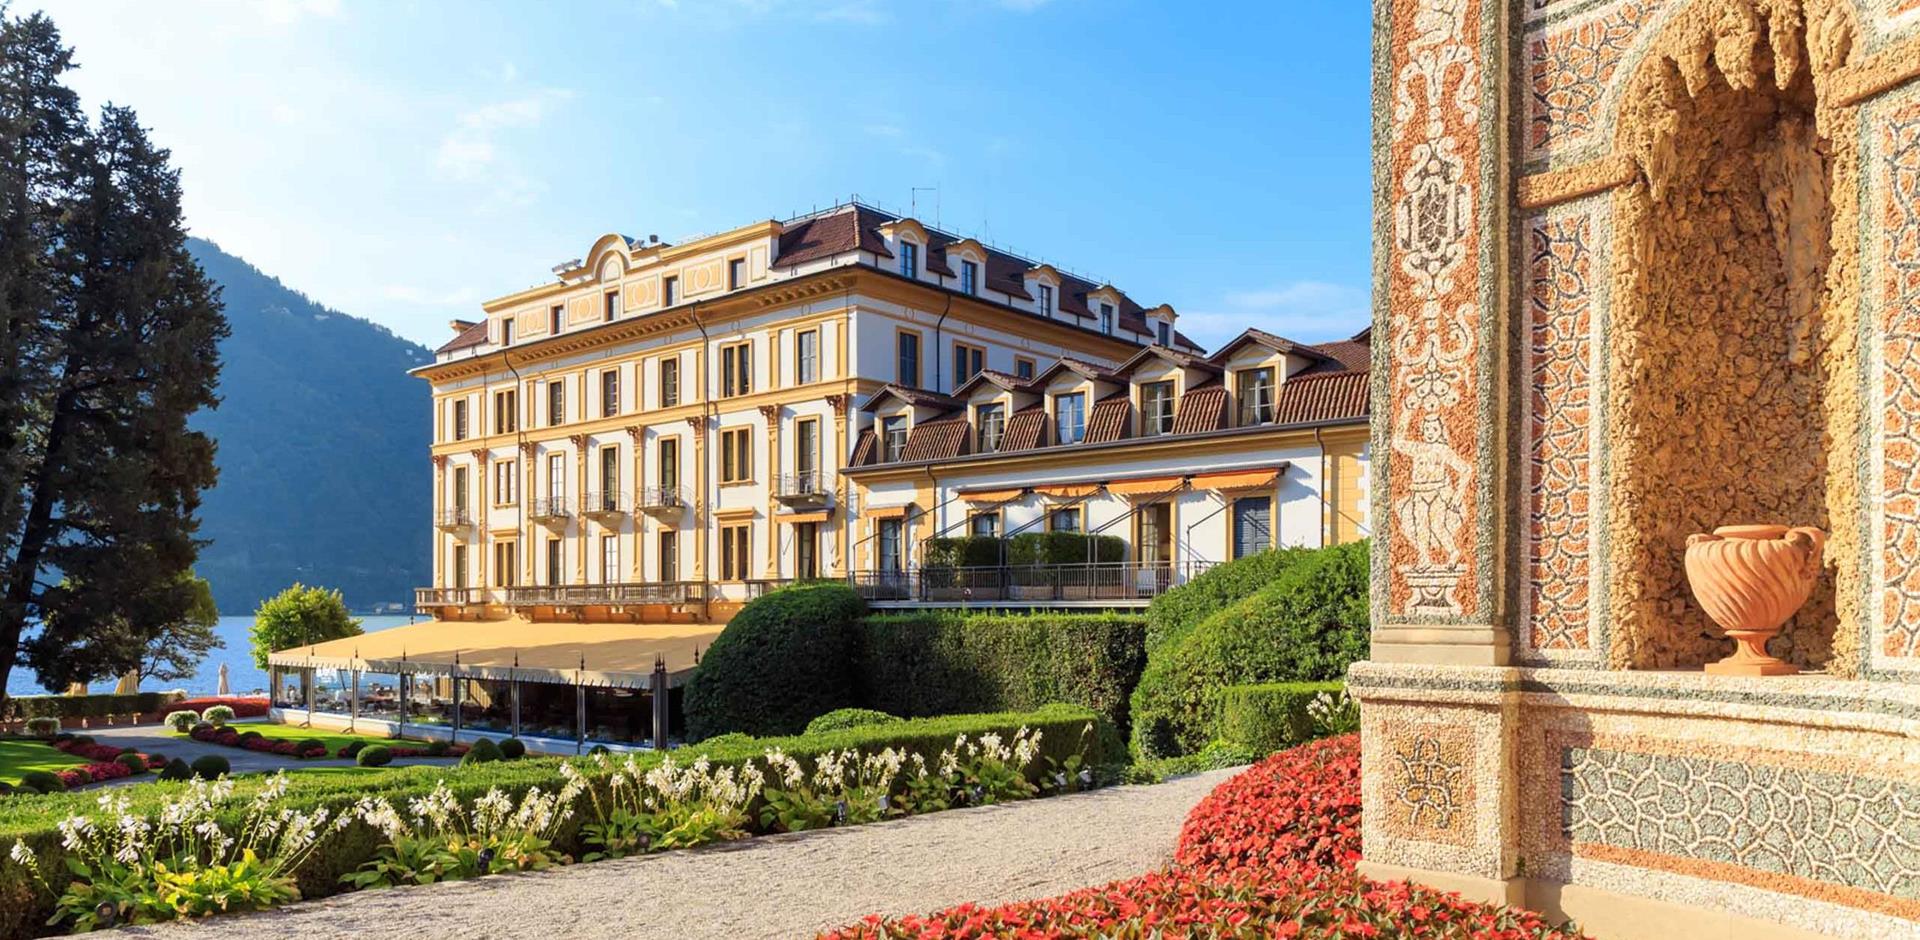 Cardinal Building-view from the Mosaic, Villa d'Este, Lake Como, Italy